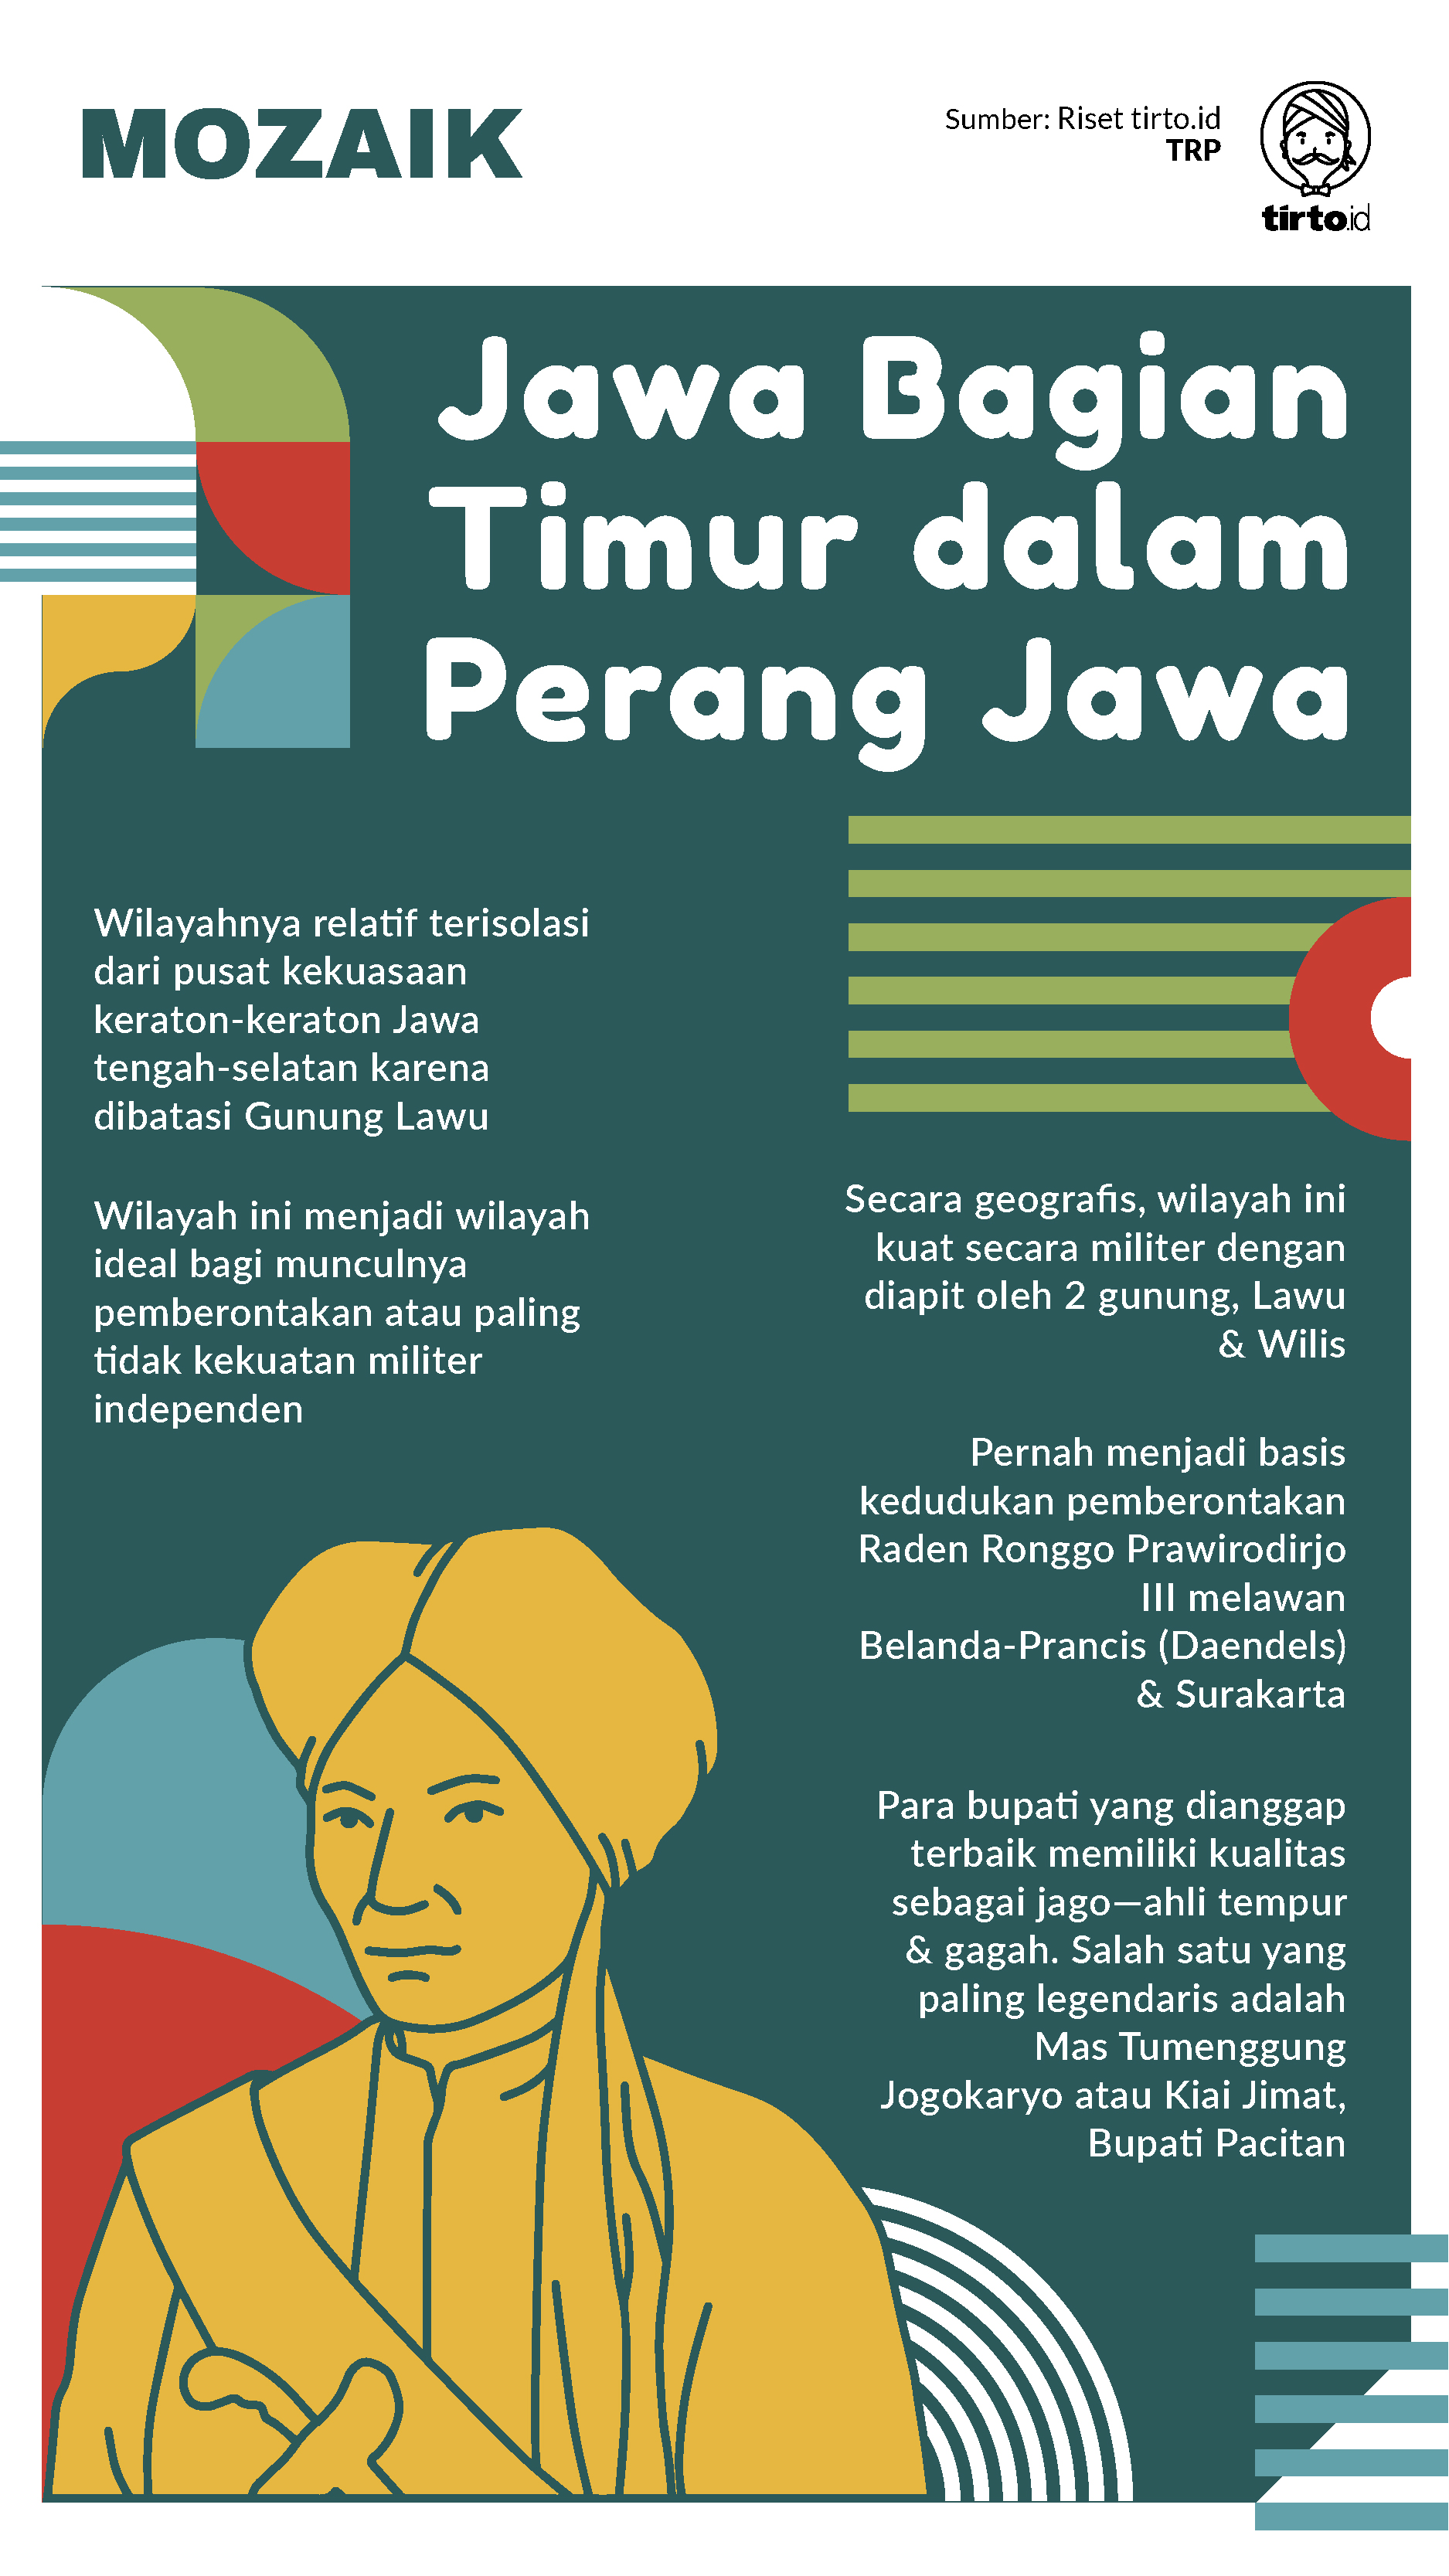 Infografik Mozaik Pangeran Diponegoro